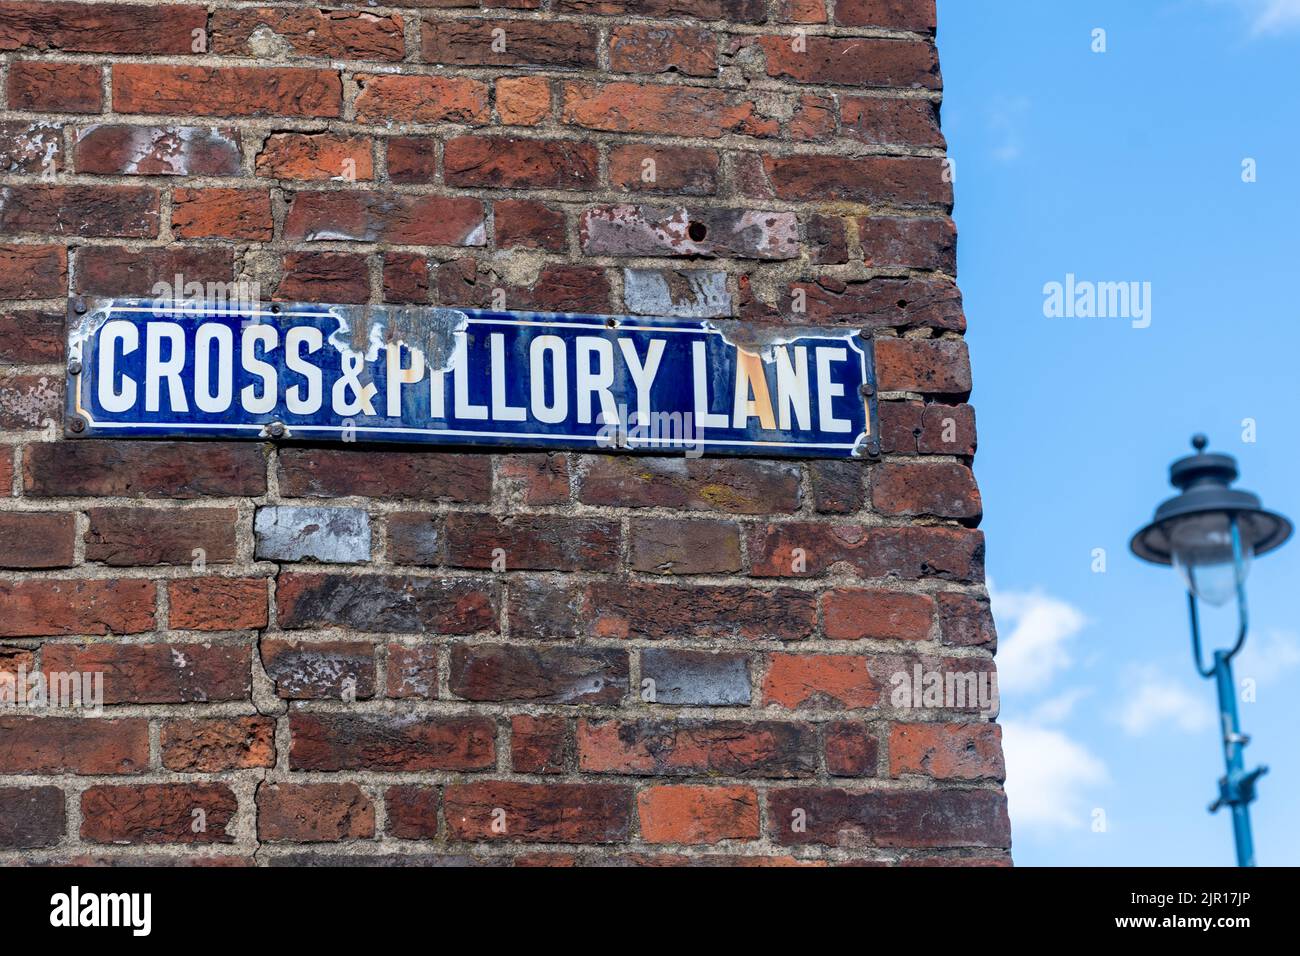 Cross & Pillory Lane, insolito cartello stradale con il nome associato alla forma storica di punizione Foto Stock